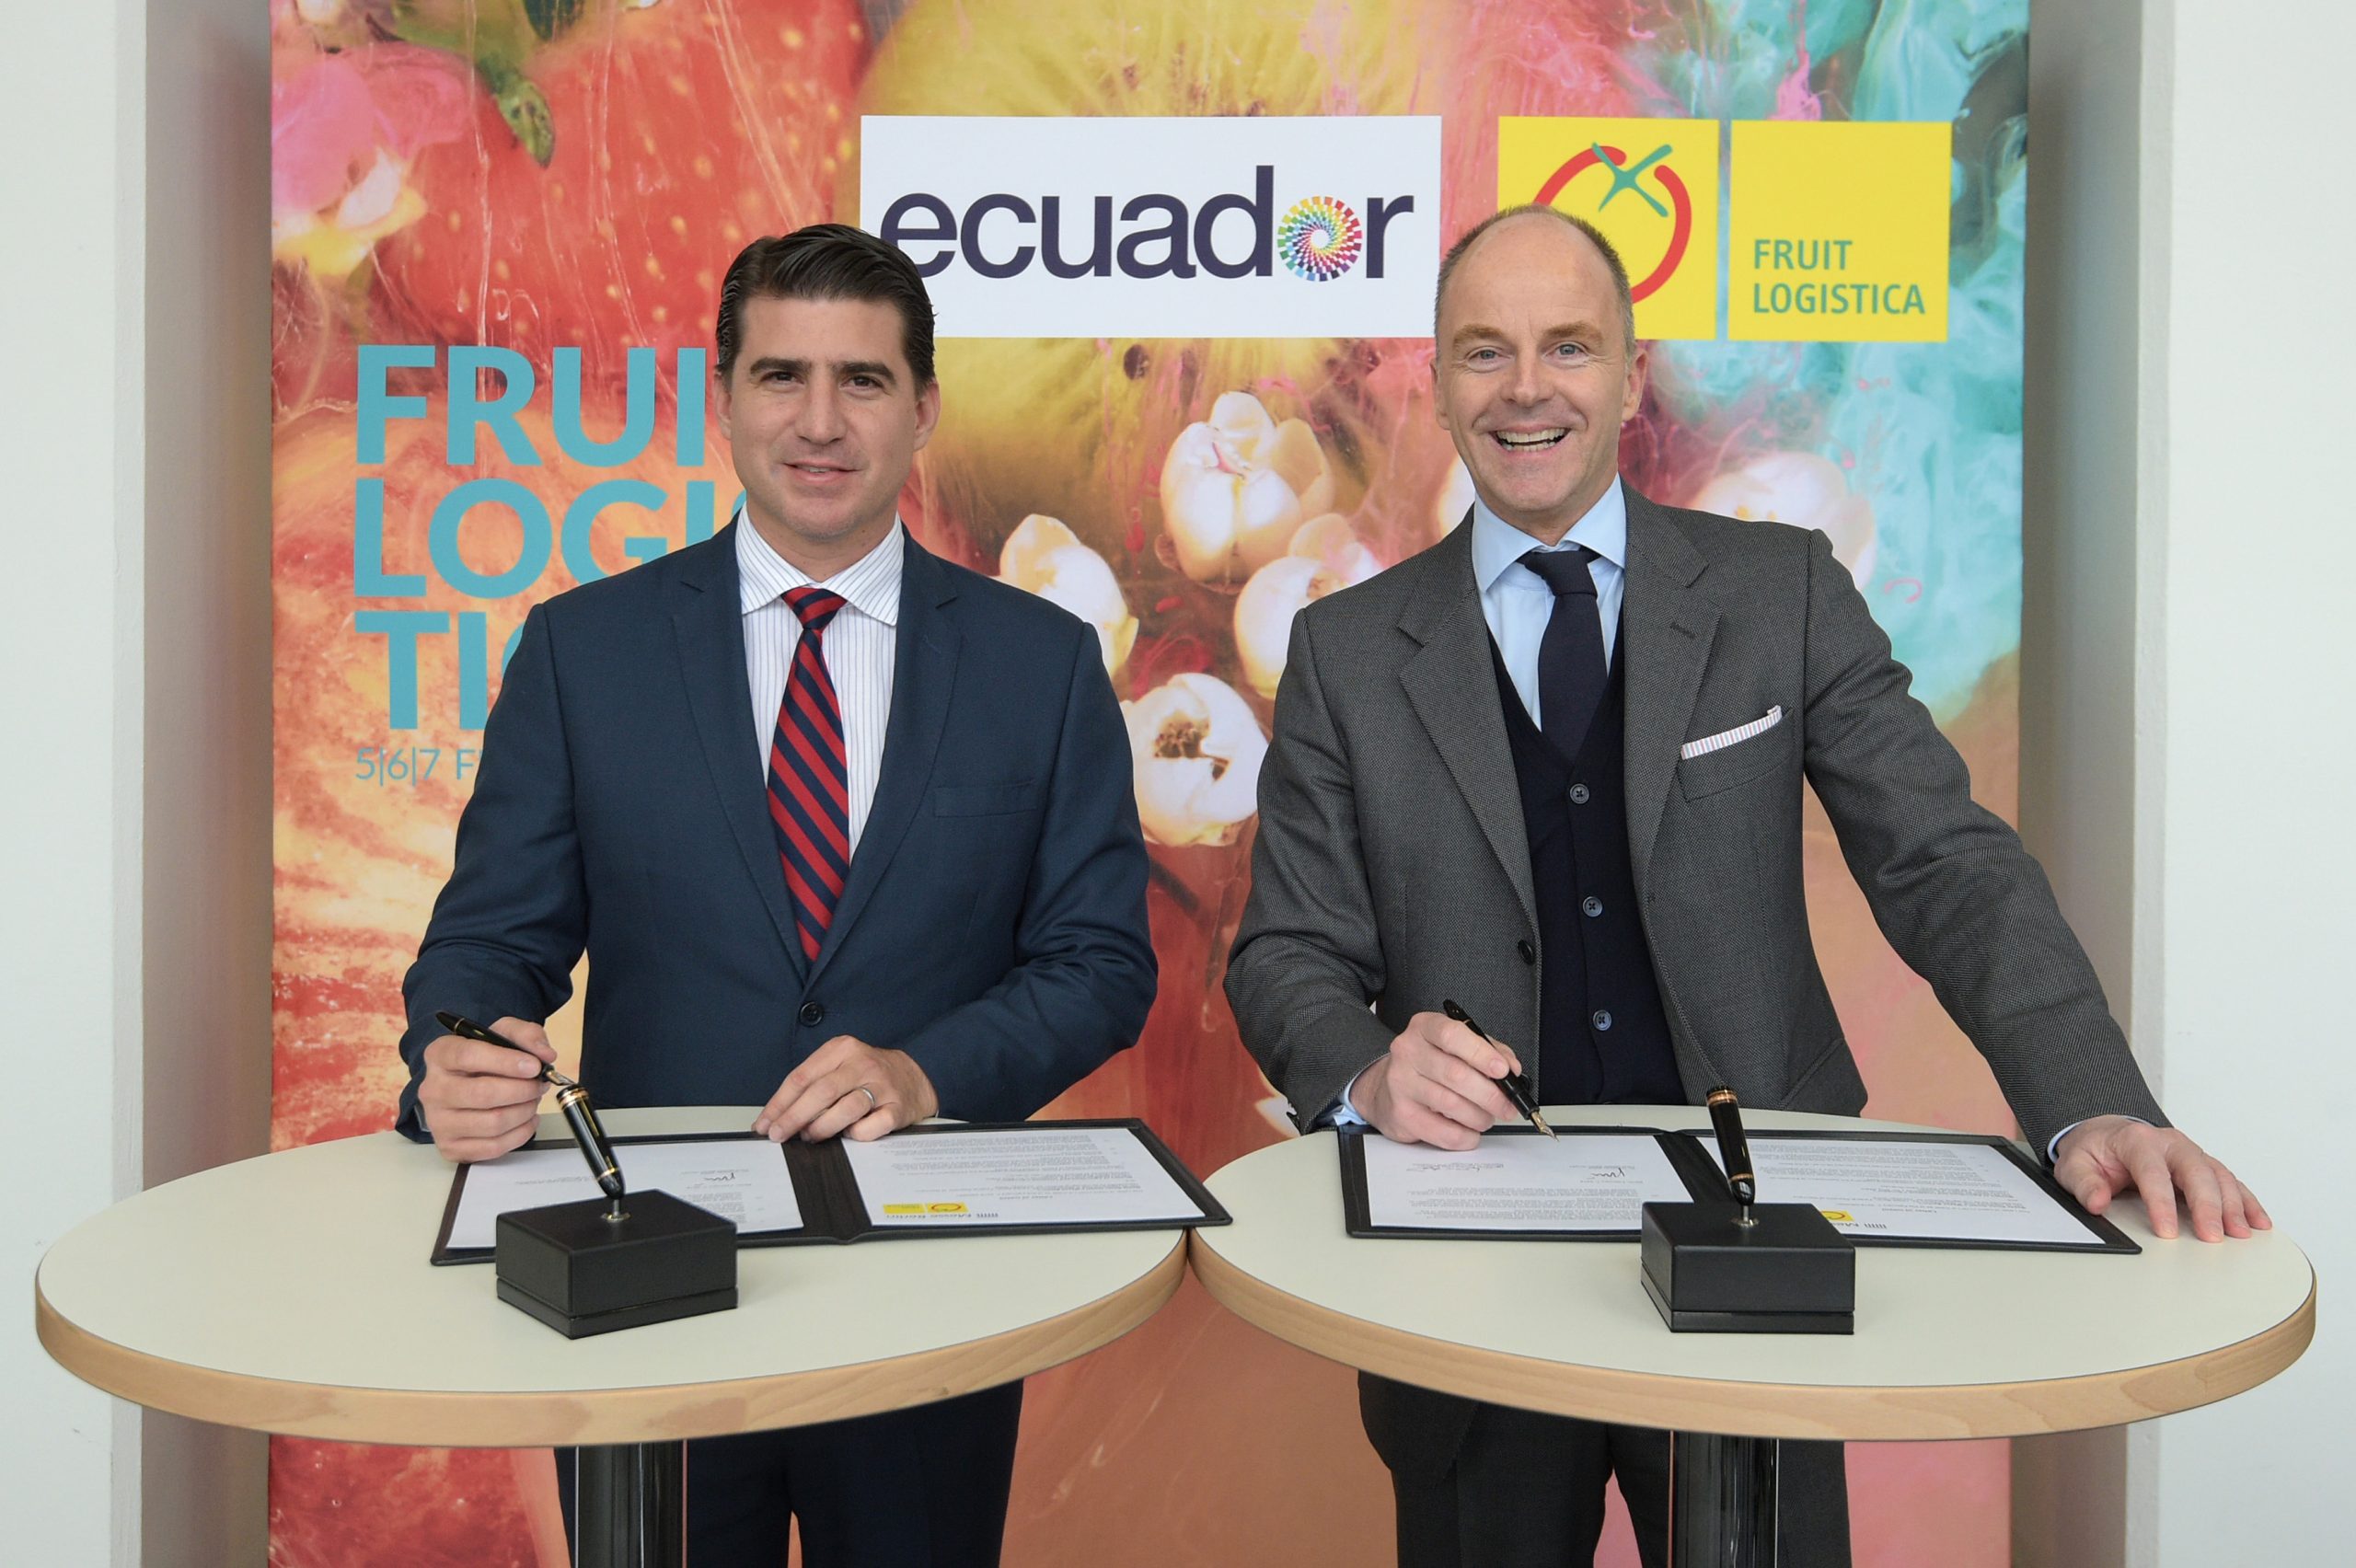 L’Équateur est le pays partenaire de FRUIT LOGISTICA 2020